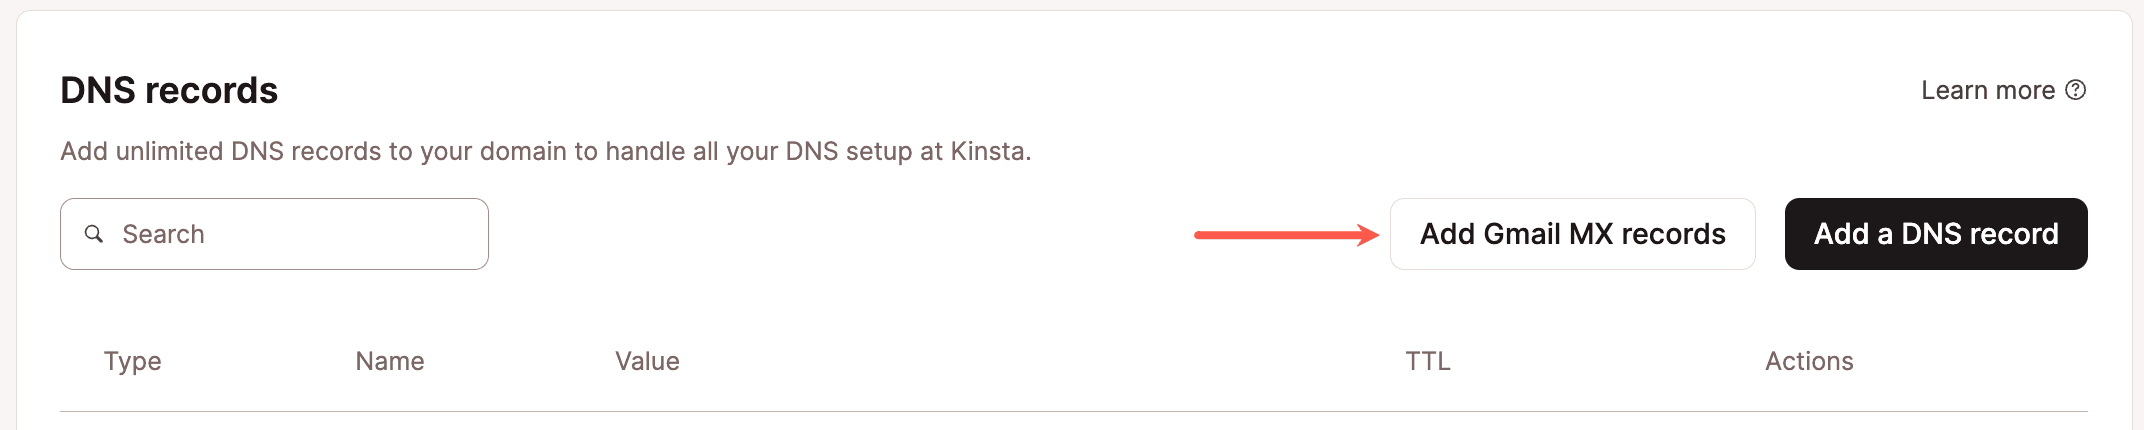 Aggiungere i record MX di Gmail su un dominio esistente con Kinsta DNS.